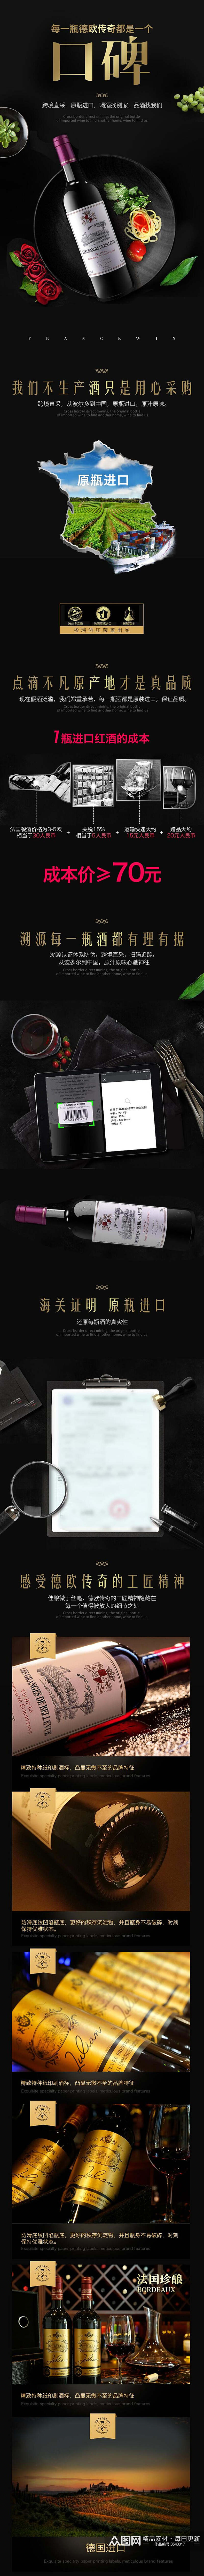 黑色红酒每一瓶德欧传奇都是一个口碑酒类电商详情页素材